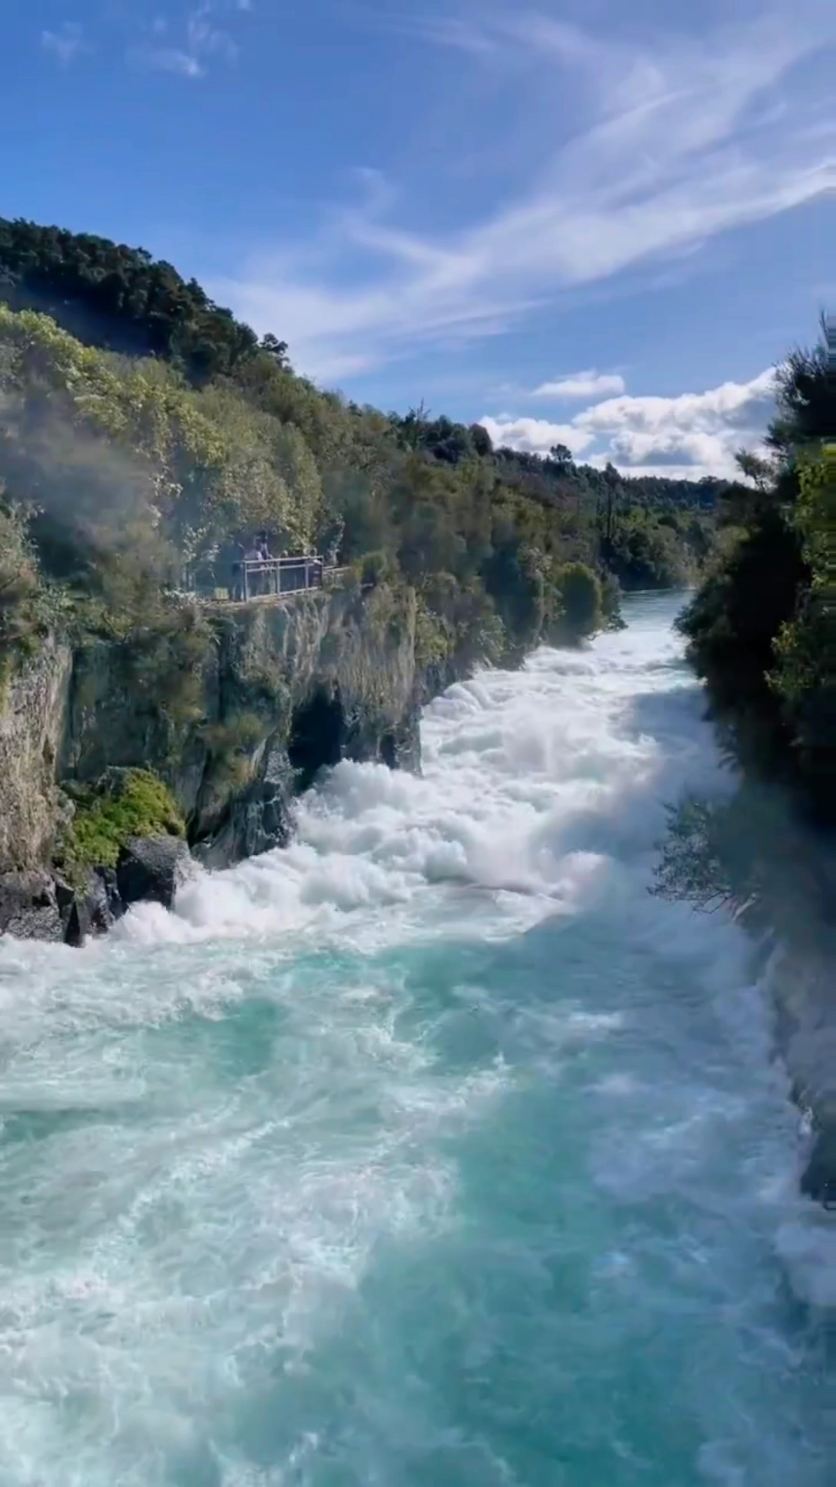 世界上最碧蓝的瀑布就在陶波湖胡卡瀑布